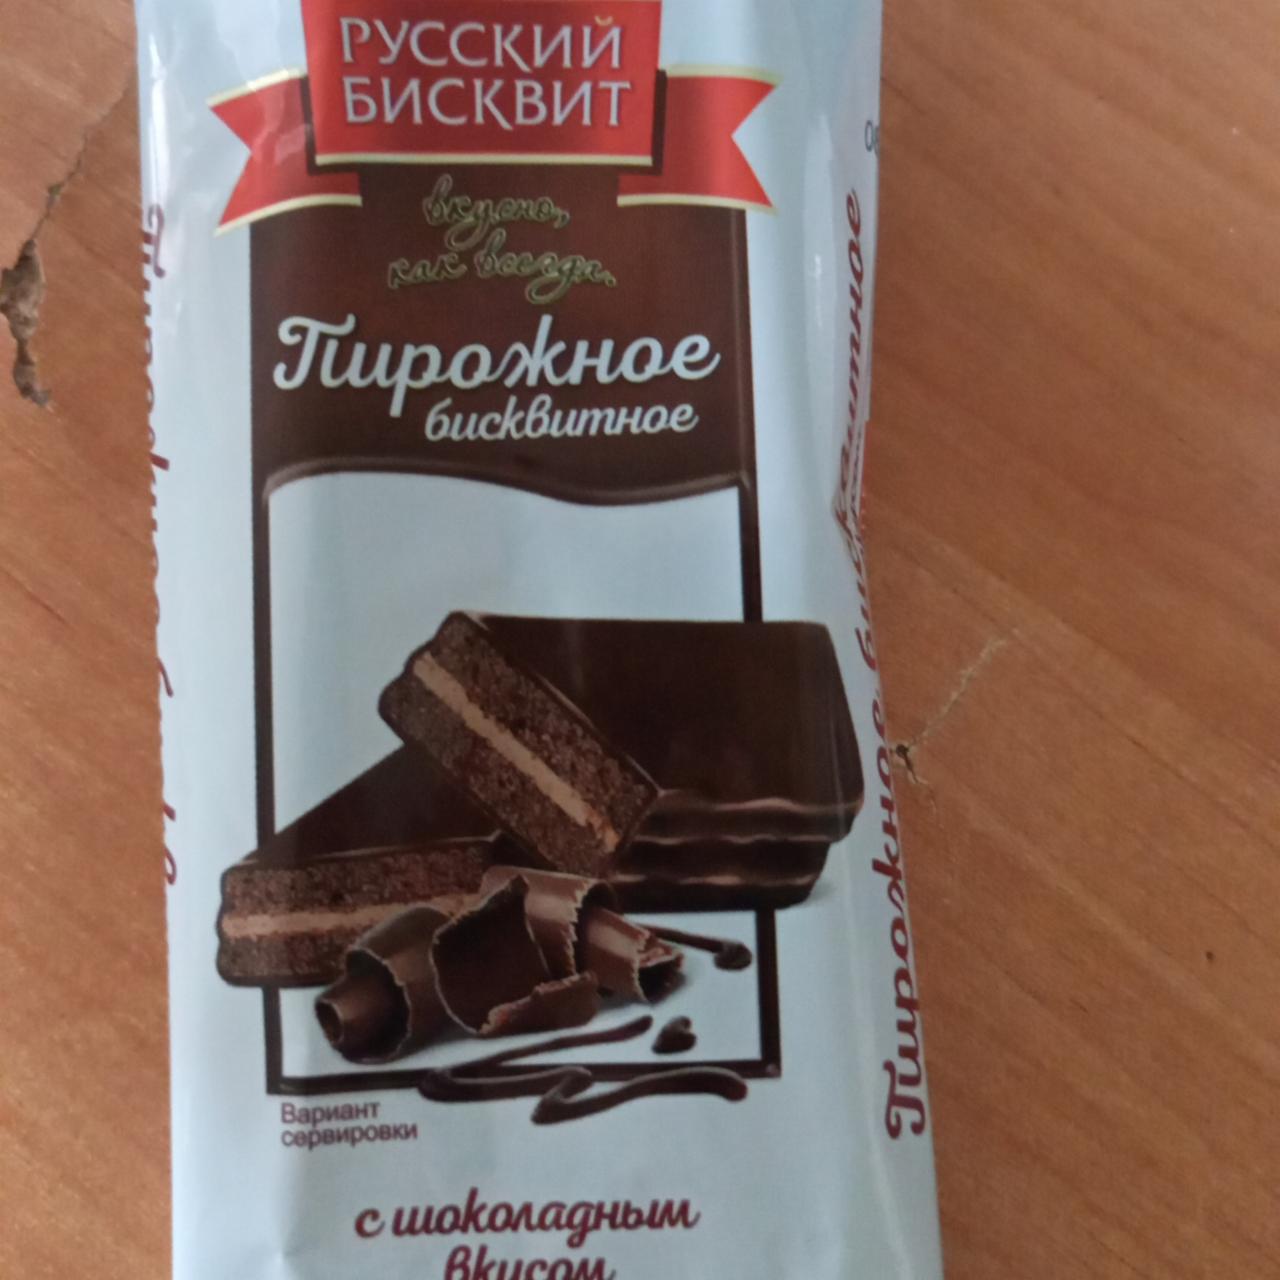 Фото - пирожное бисквитное с шоколадным вкусом глазированное Русский Бисквит